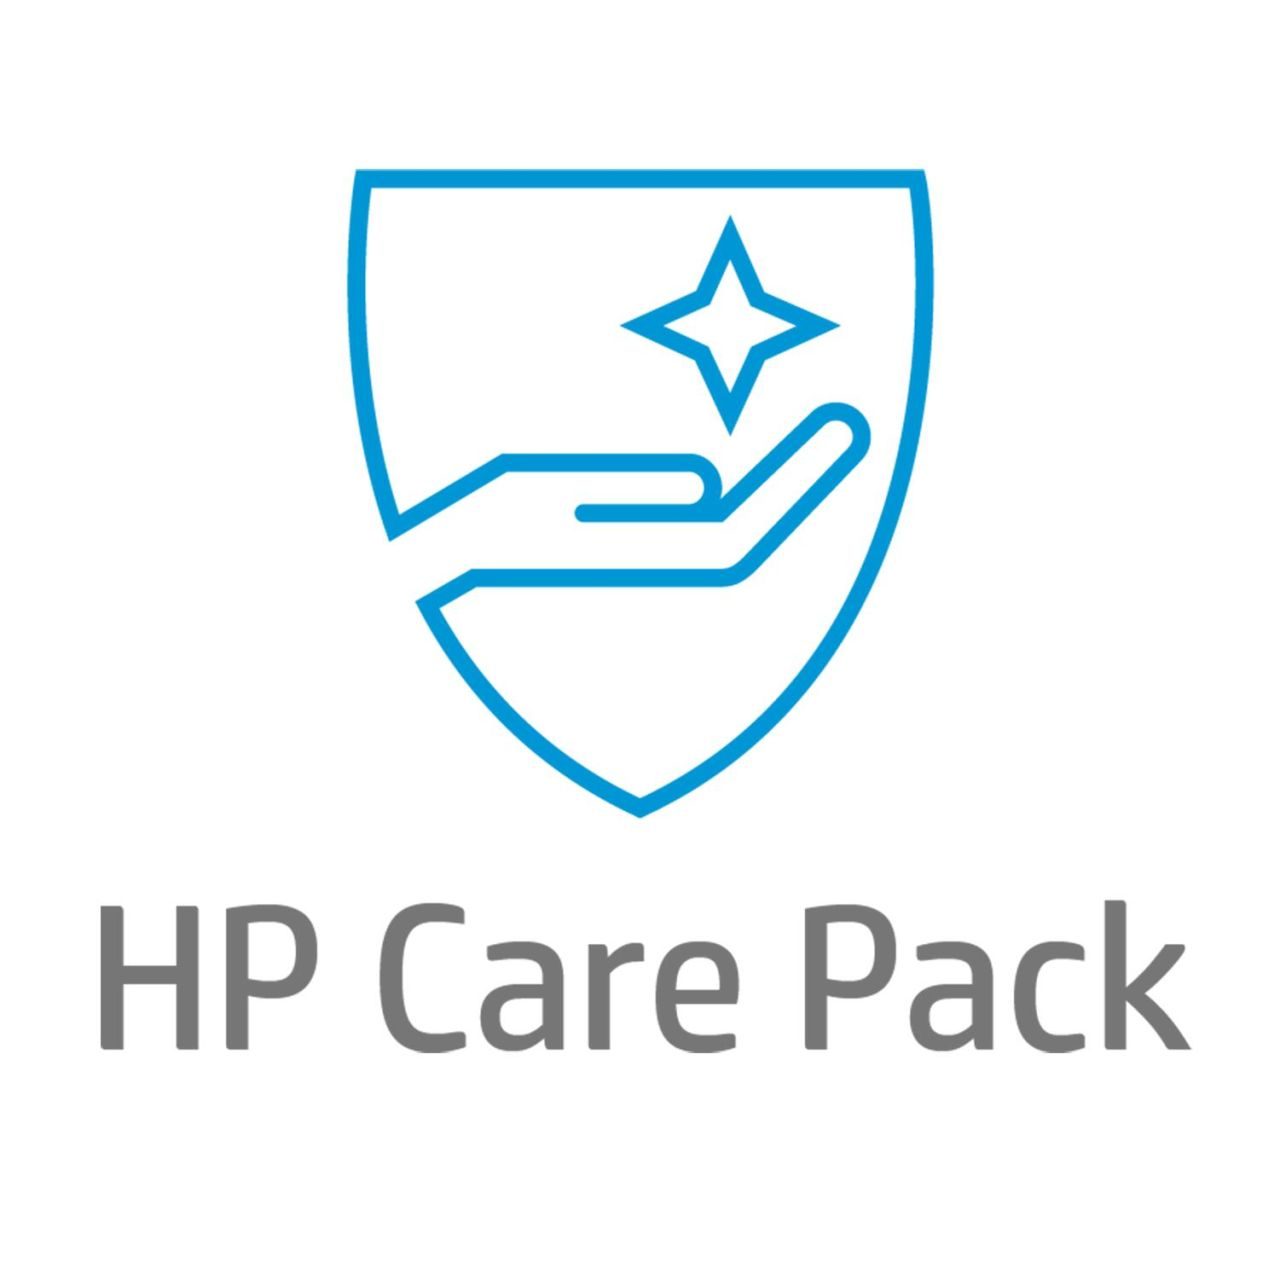 HP Care Pack (UQ993E) Hardware-Support am nächsten Arbeitstag vor Ort für Notebooks, 1 Jahr